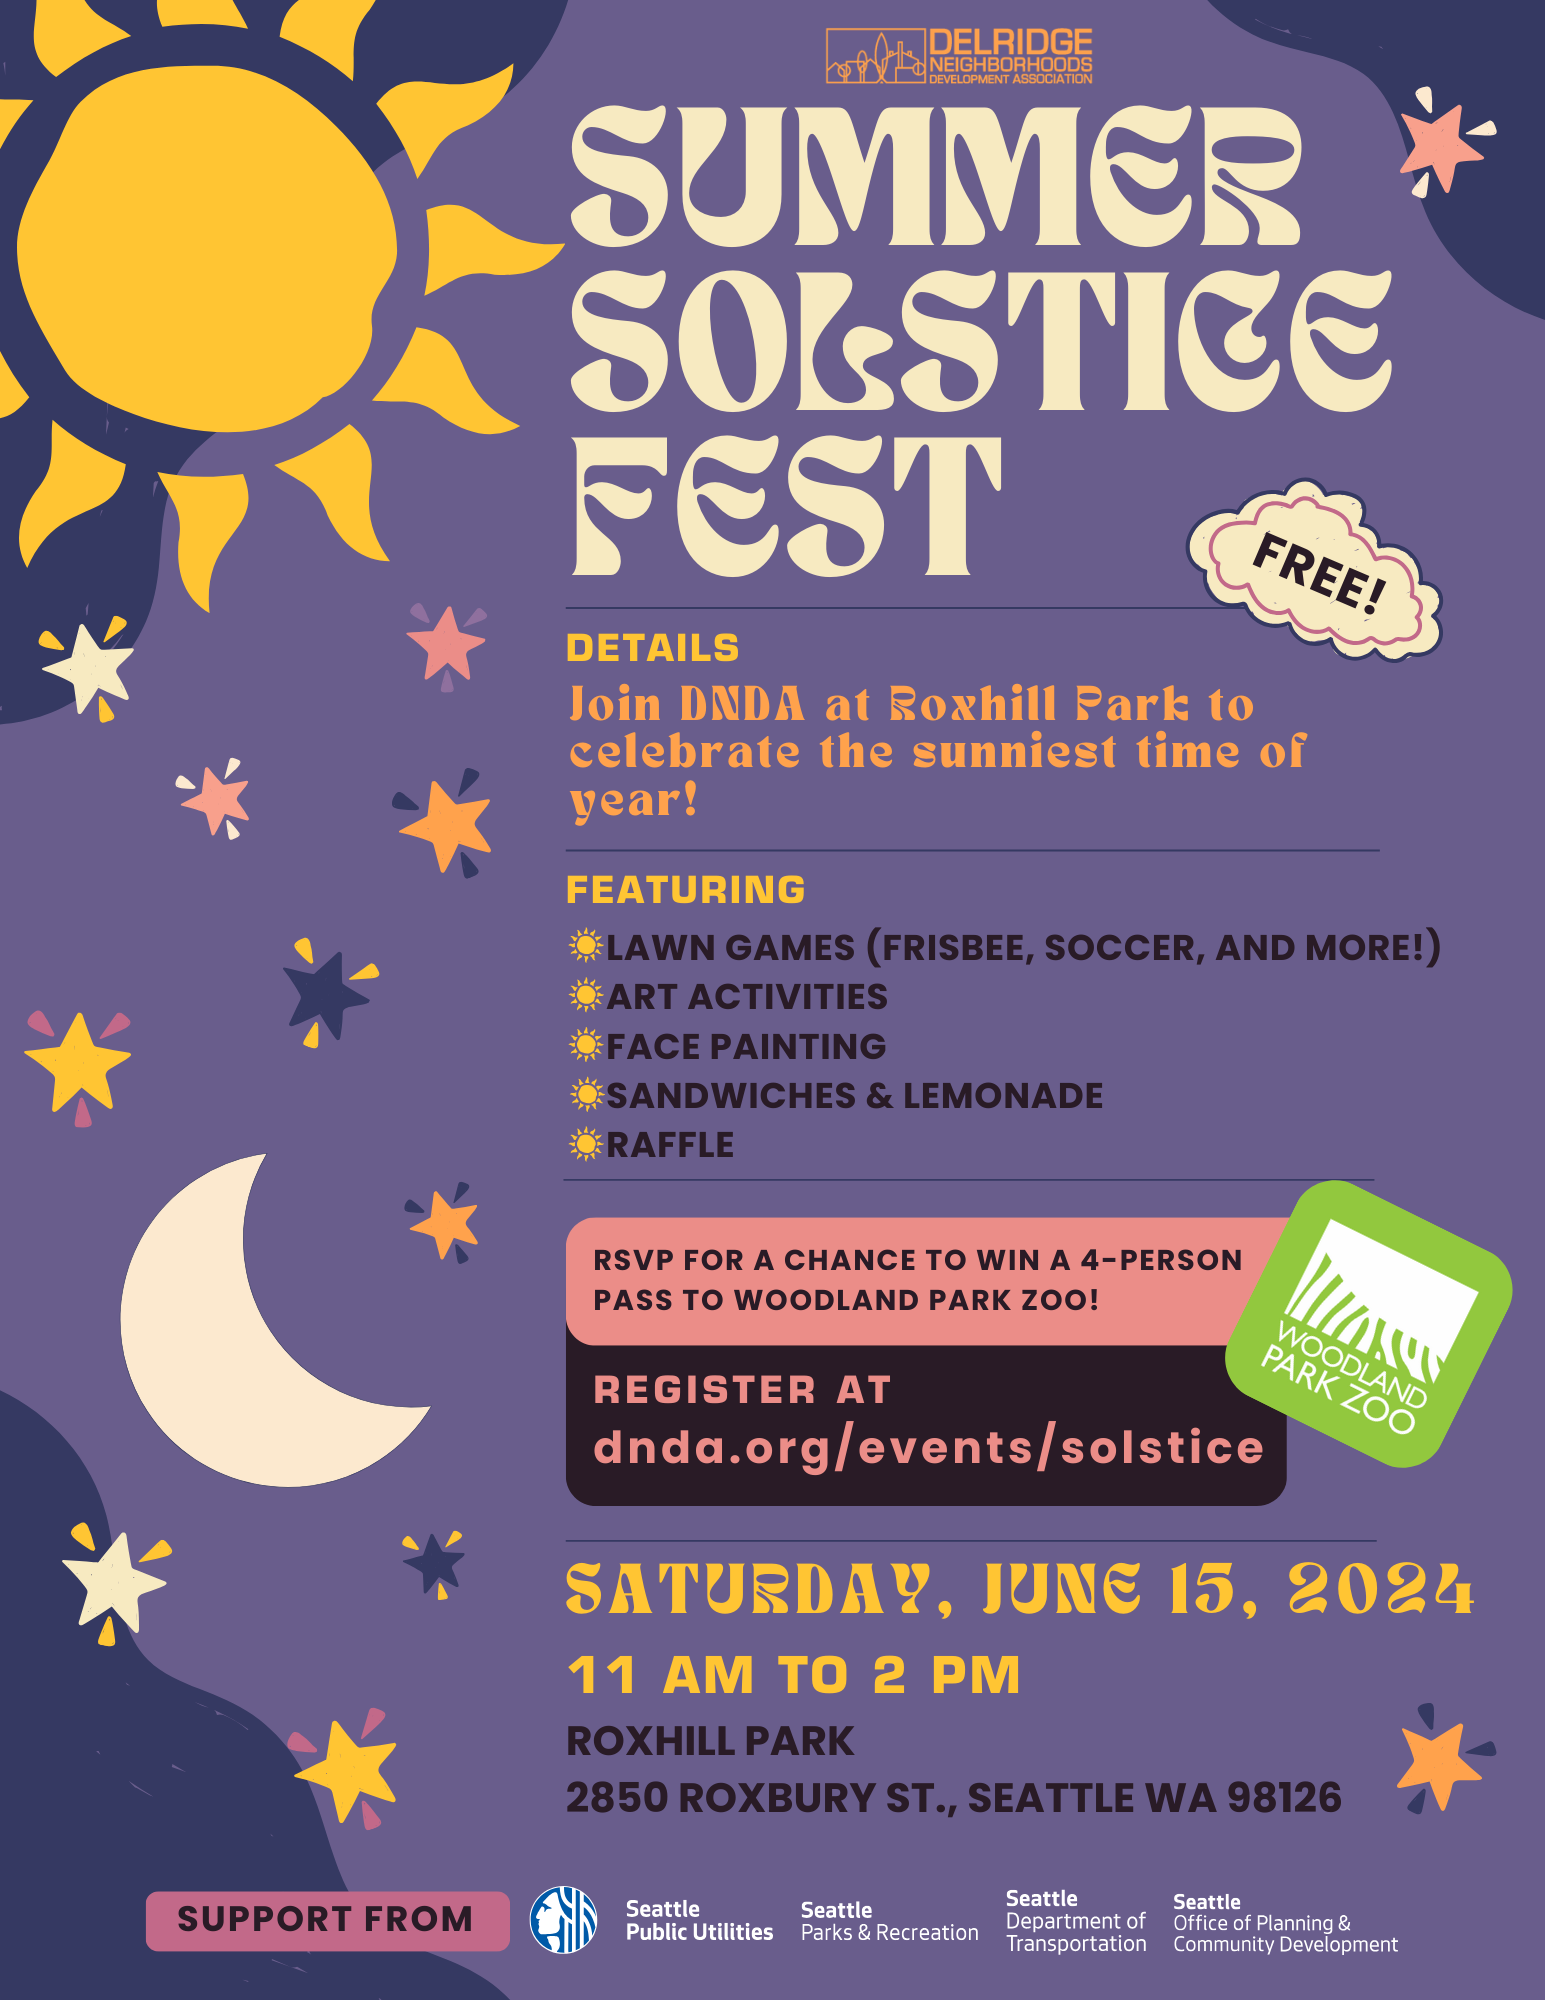 Flyer for Summer Solstice Fest (all details described)